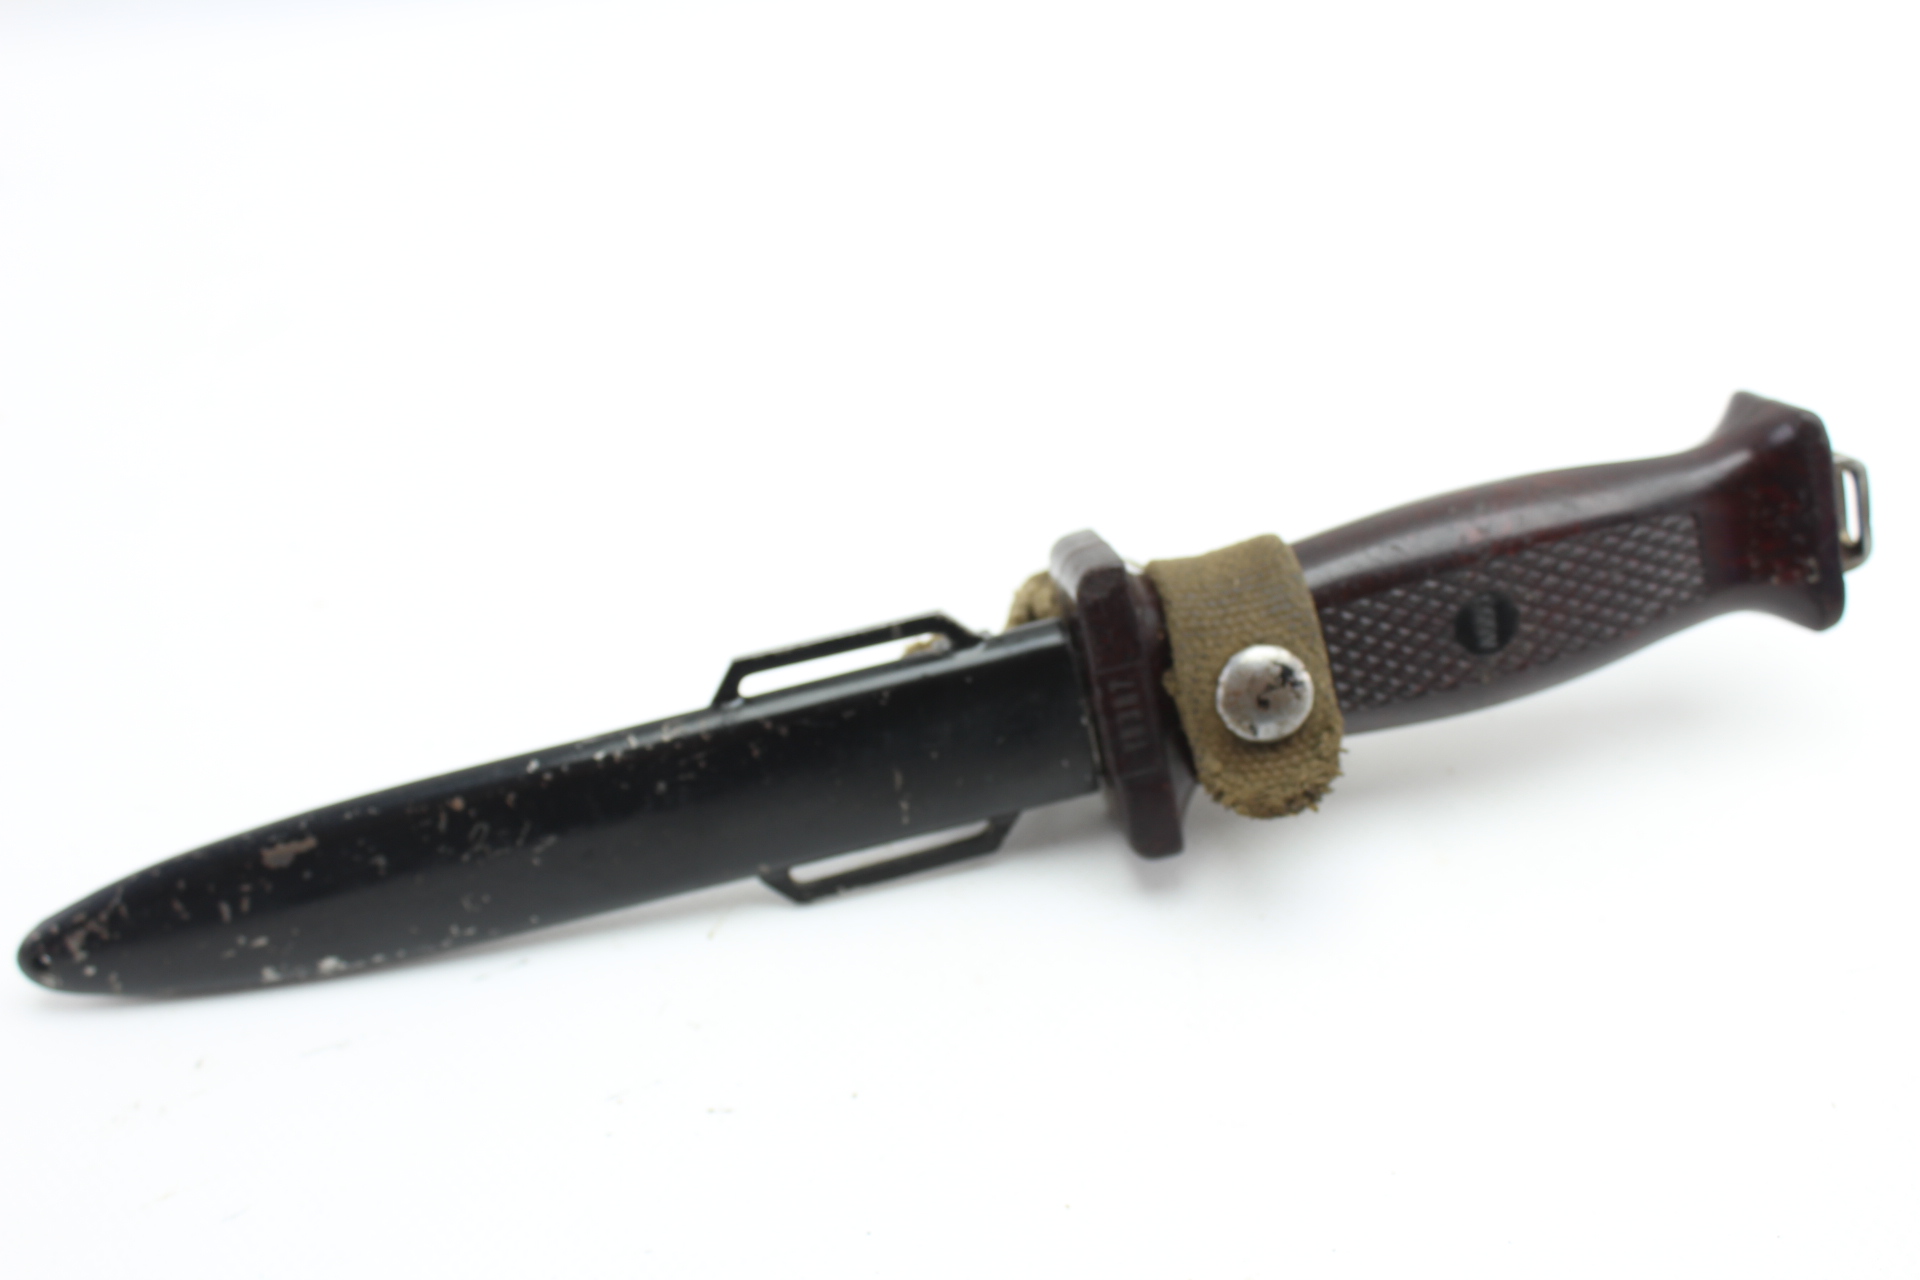 GDR NVA combat knife M66 - 2nd model with number 310387